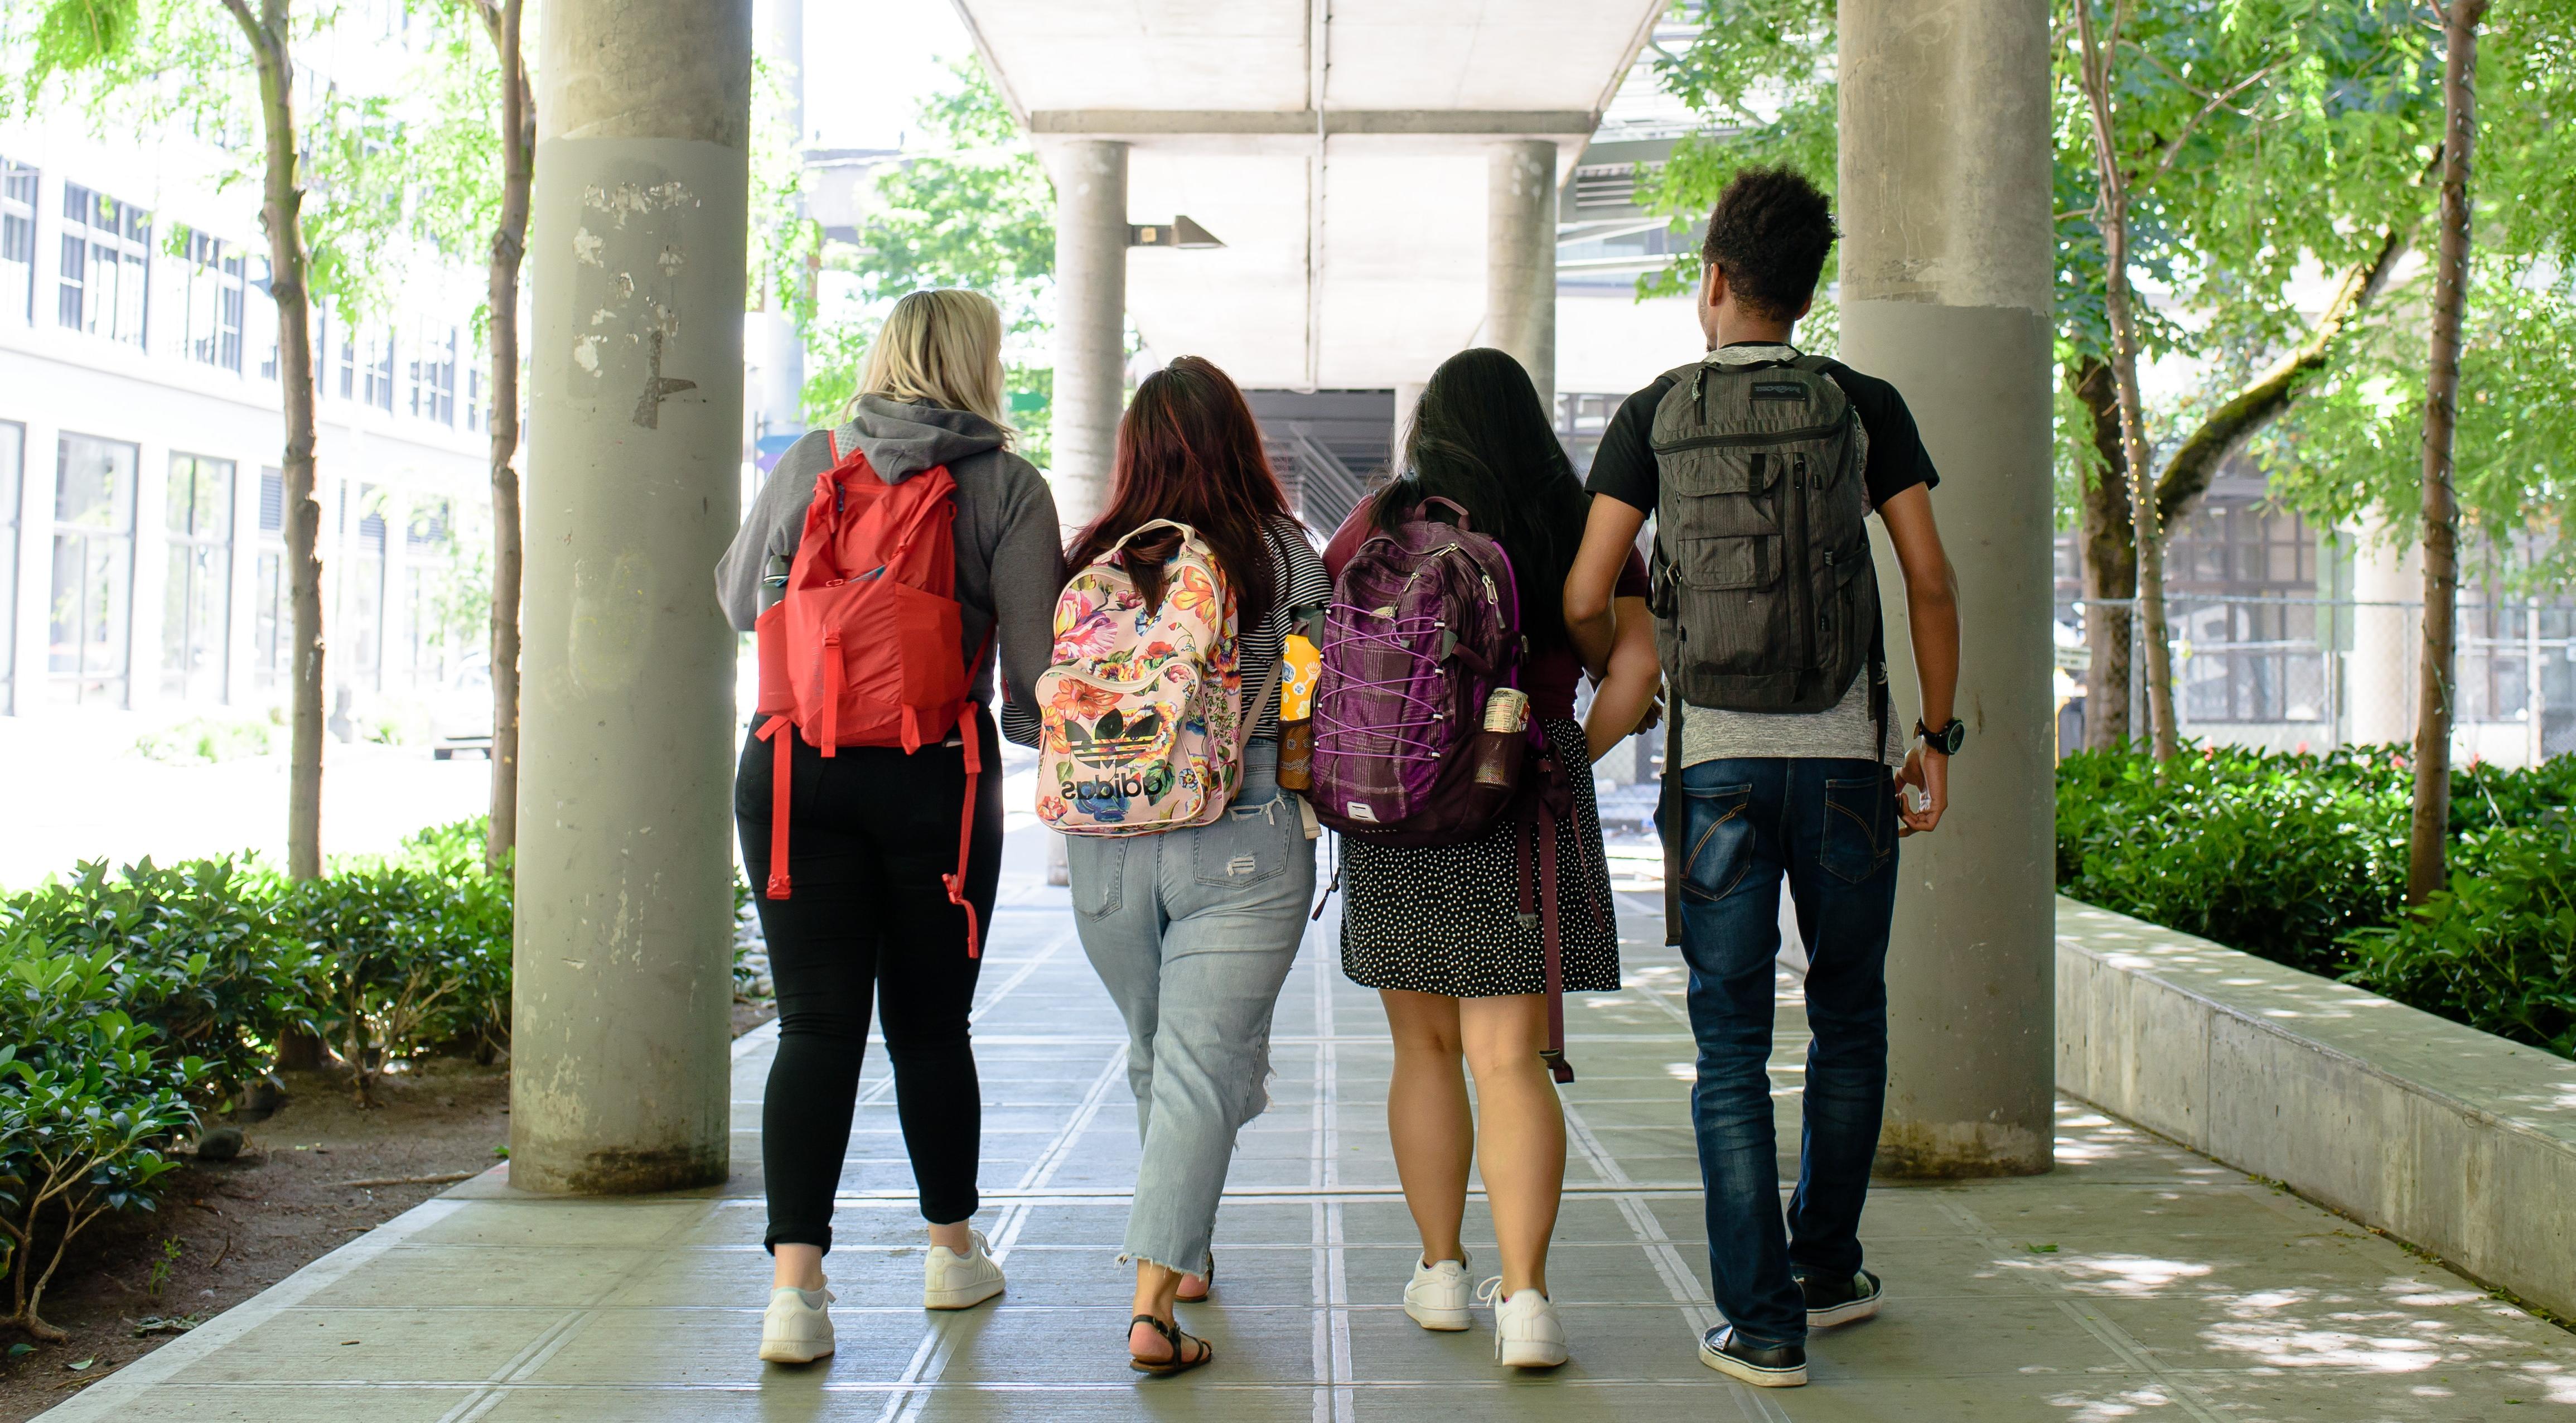 四名学生背对着镜头走在一条有遮盖的人行道上. 